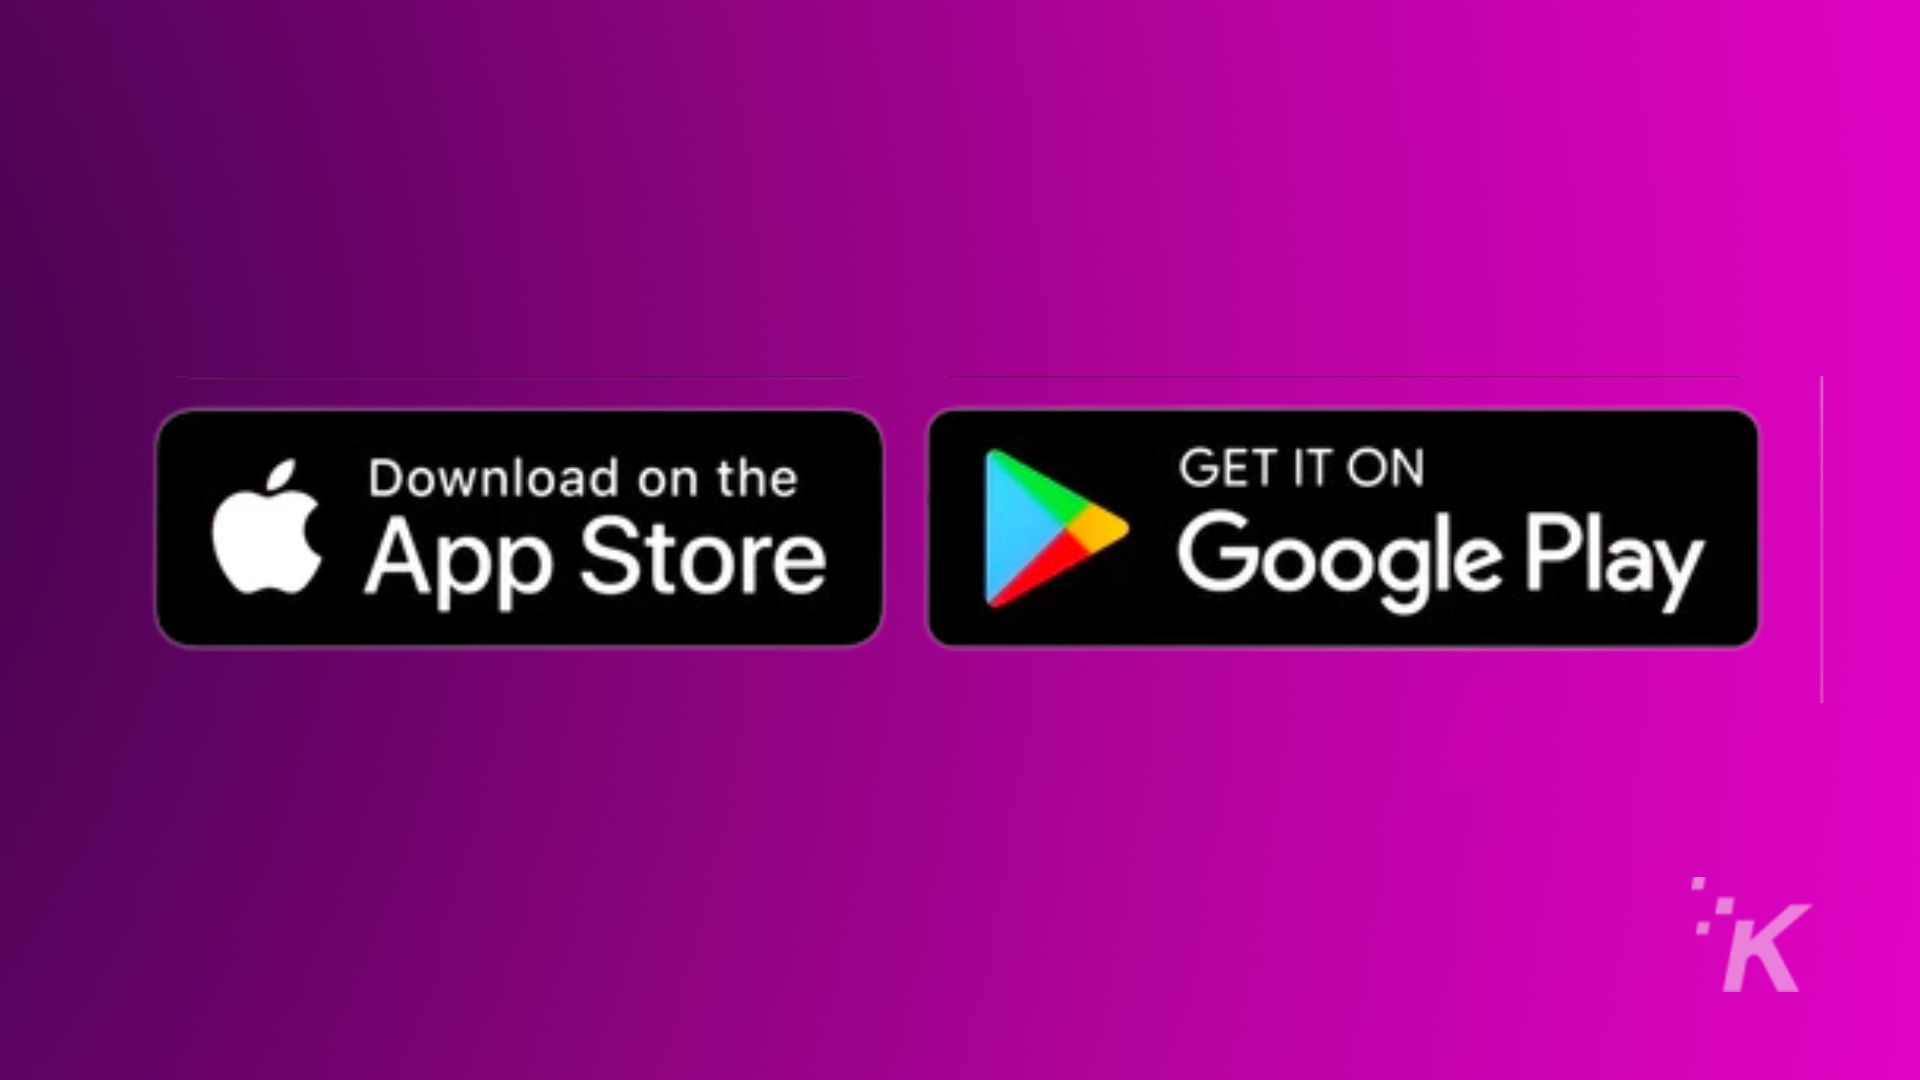 L'immagine promuove la disponibilità di un prodotto su App Store e Google Play. Testo completo: Scarica dall'App Store GET IT ON Google Play IK